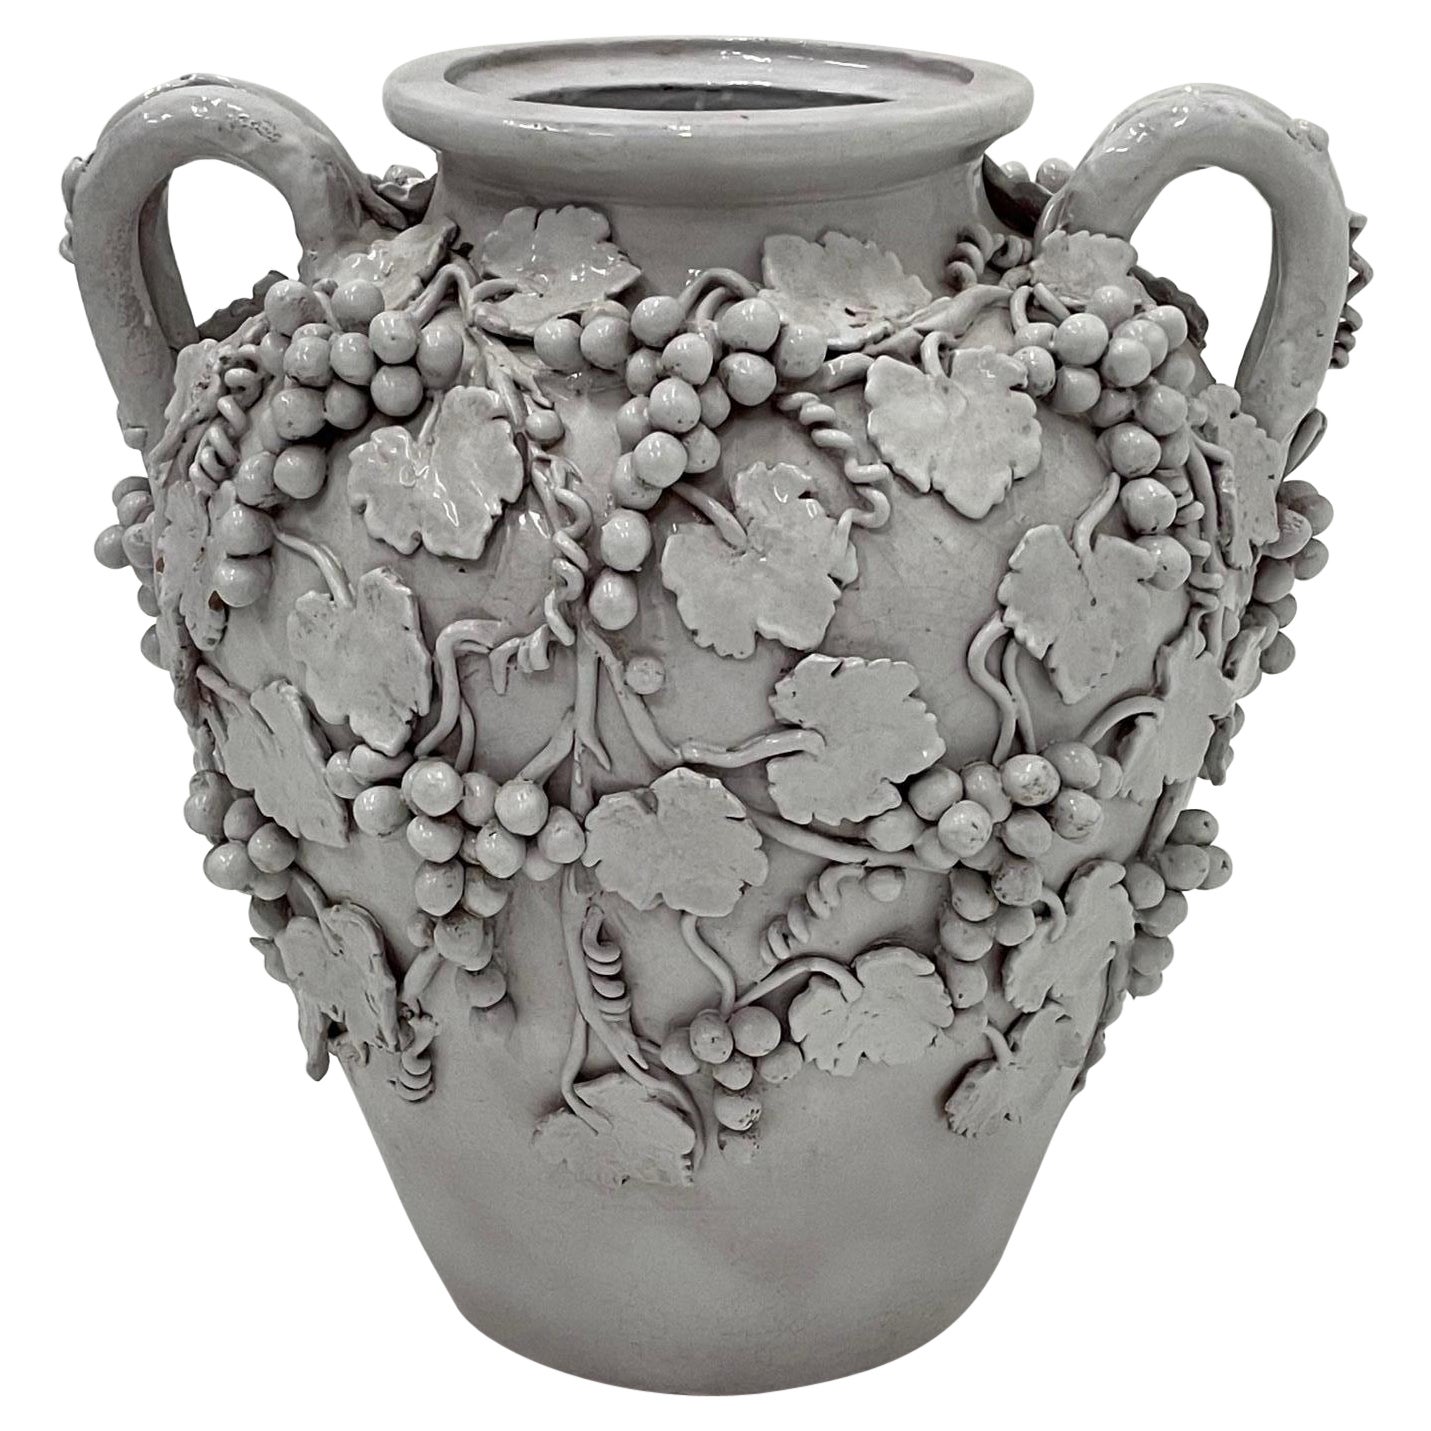 Monumental & Elaborately Decorated Italian Glazed White Terracotta Urn